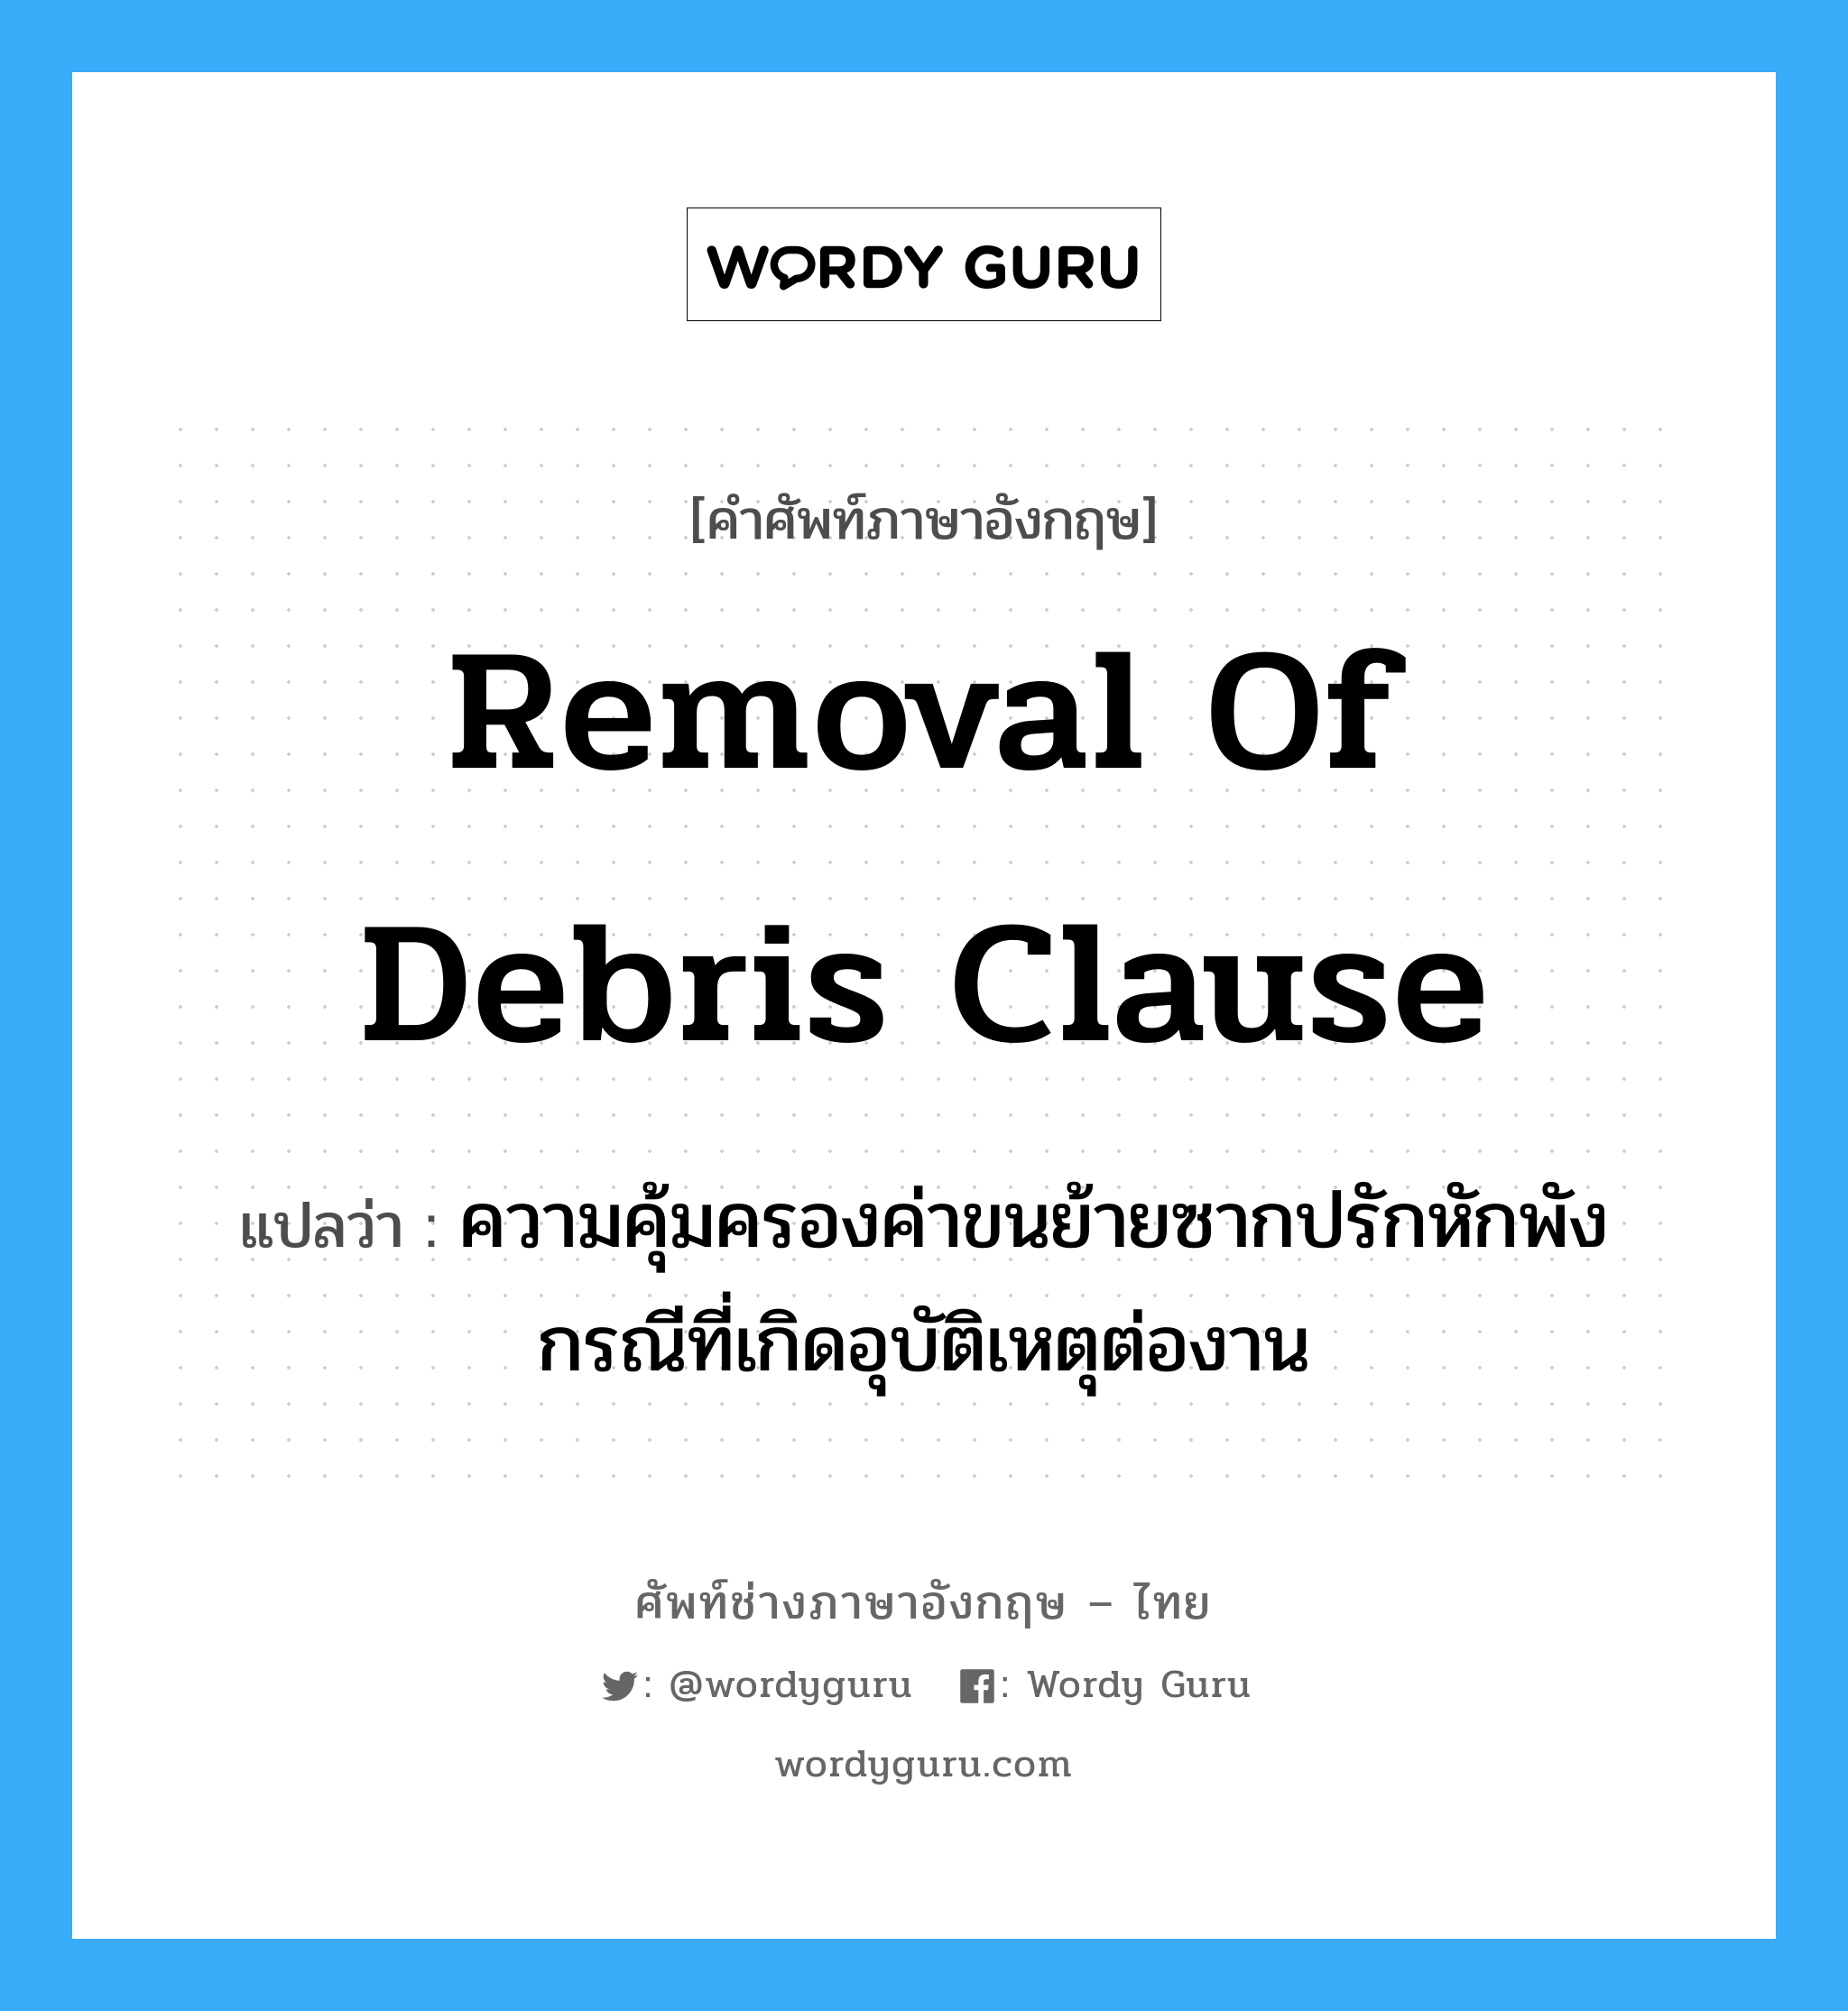 Removal of Debris Clause แปลว่า?, คำศัพท์ช่างภาษาอังกฤษ - ไทย Removal of Debris Clause คำศัพท์ภาษาอังกฤษ Removal of Debris Clause แปลว่า ความคุ้มครองค่าขนย้ายซากปรักหักพัง กรณีที่เกิดอุบัติเหตุต่องาน